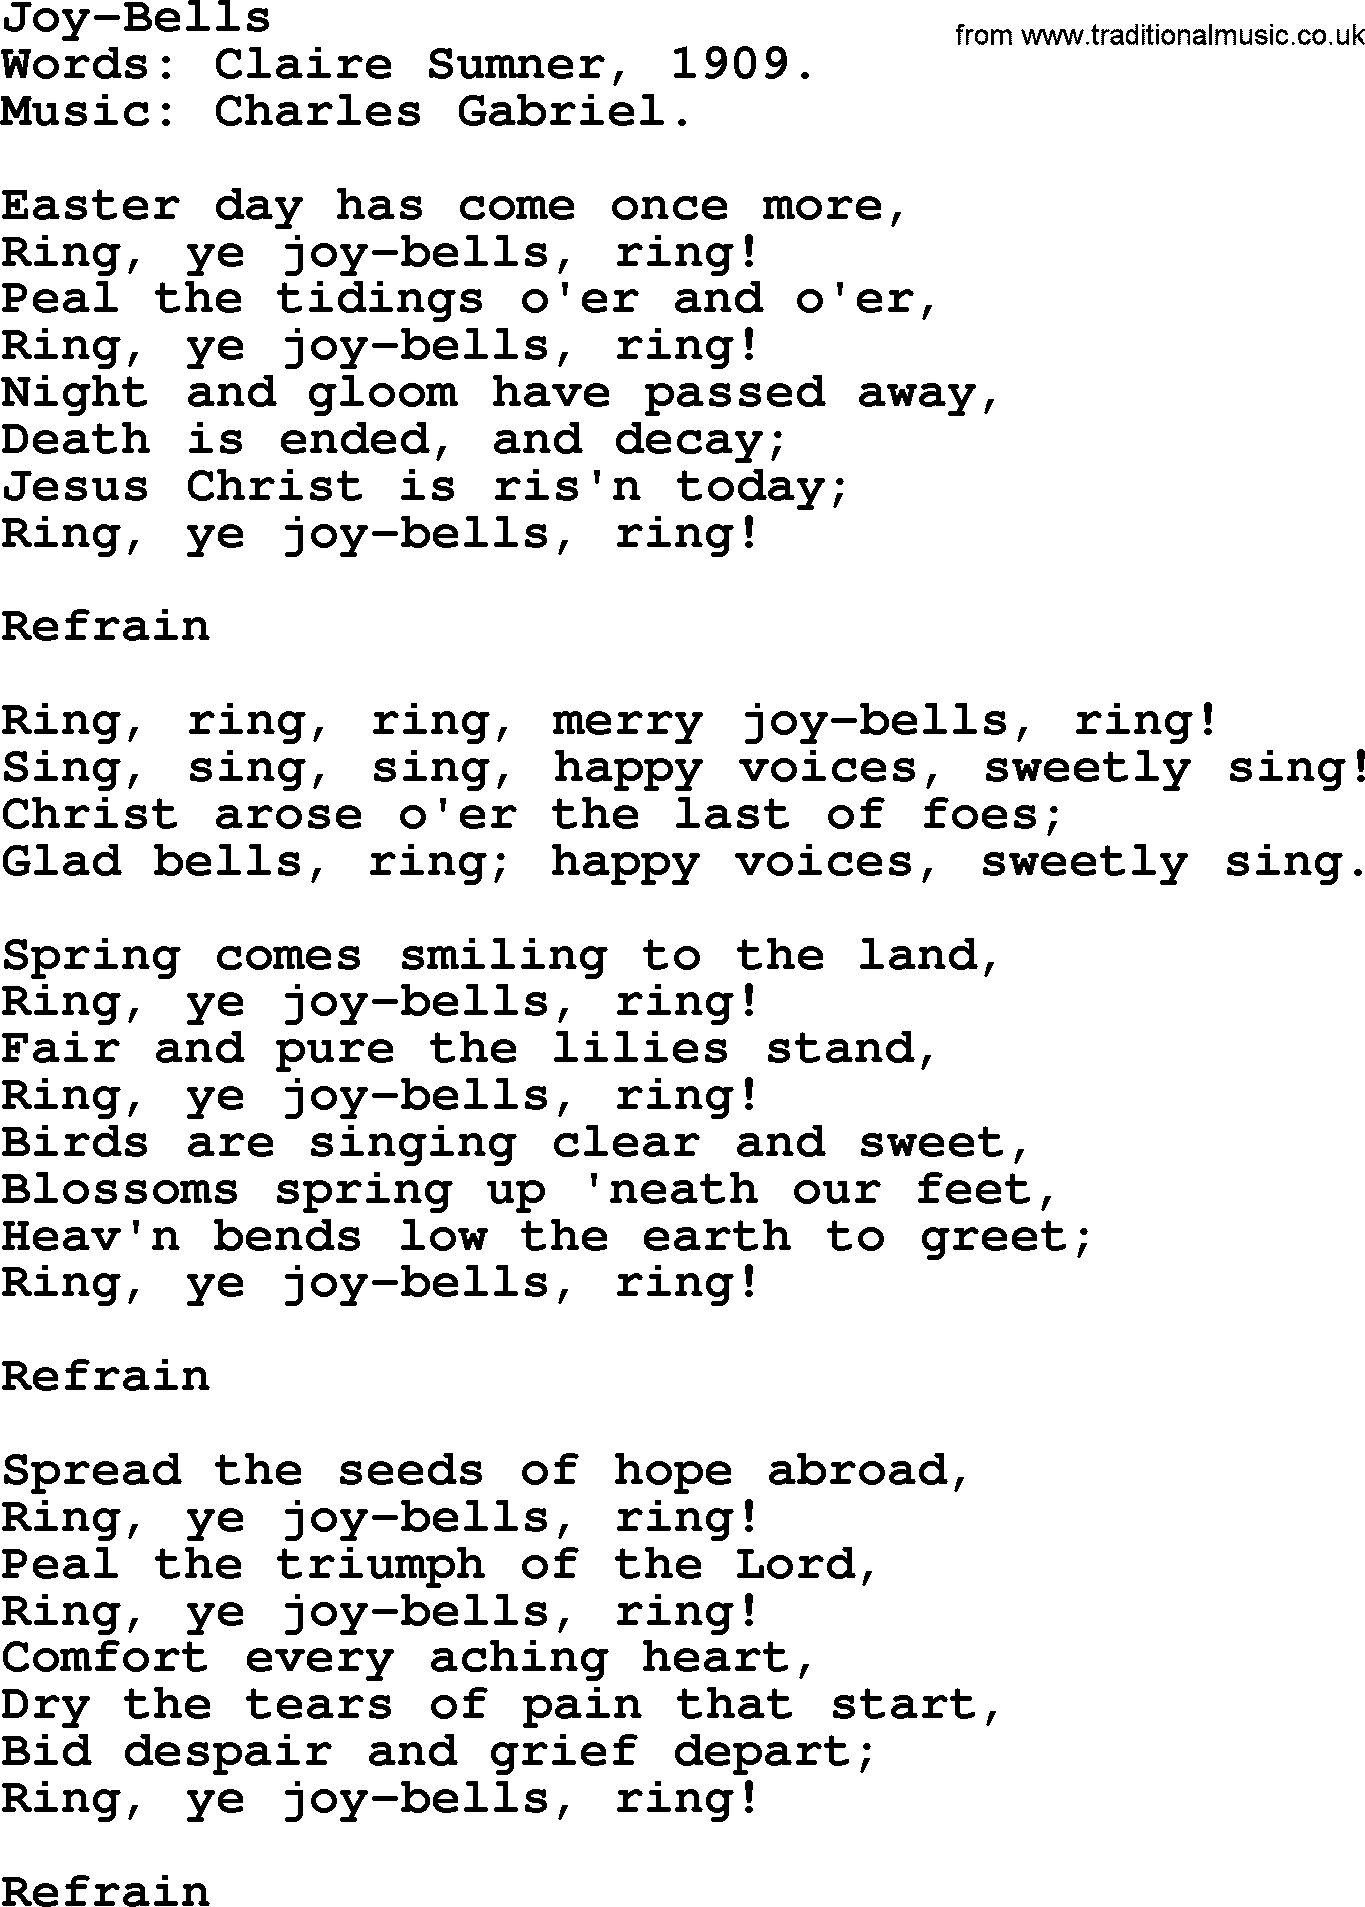 Easter Hymns, Hymn: Joy-bells, lyrics with PDF